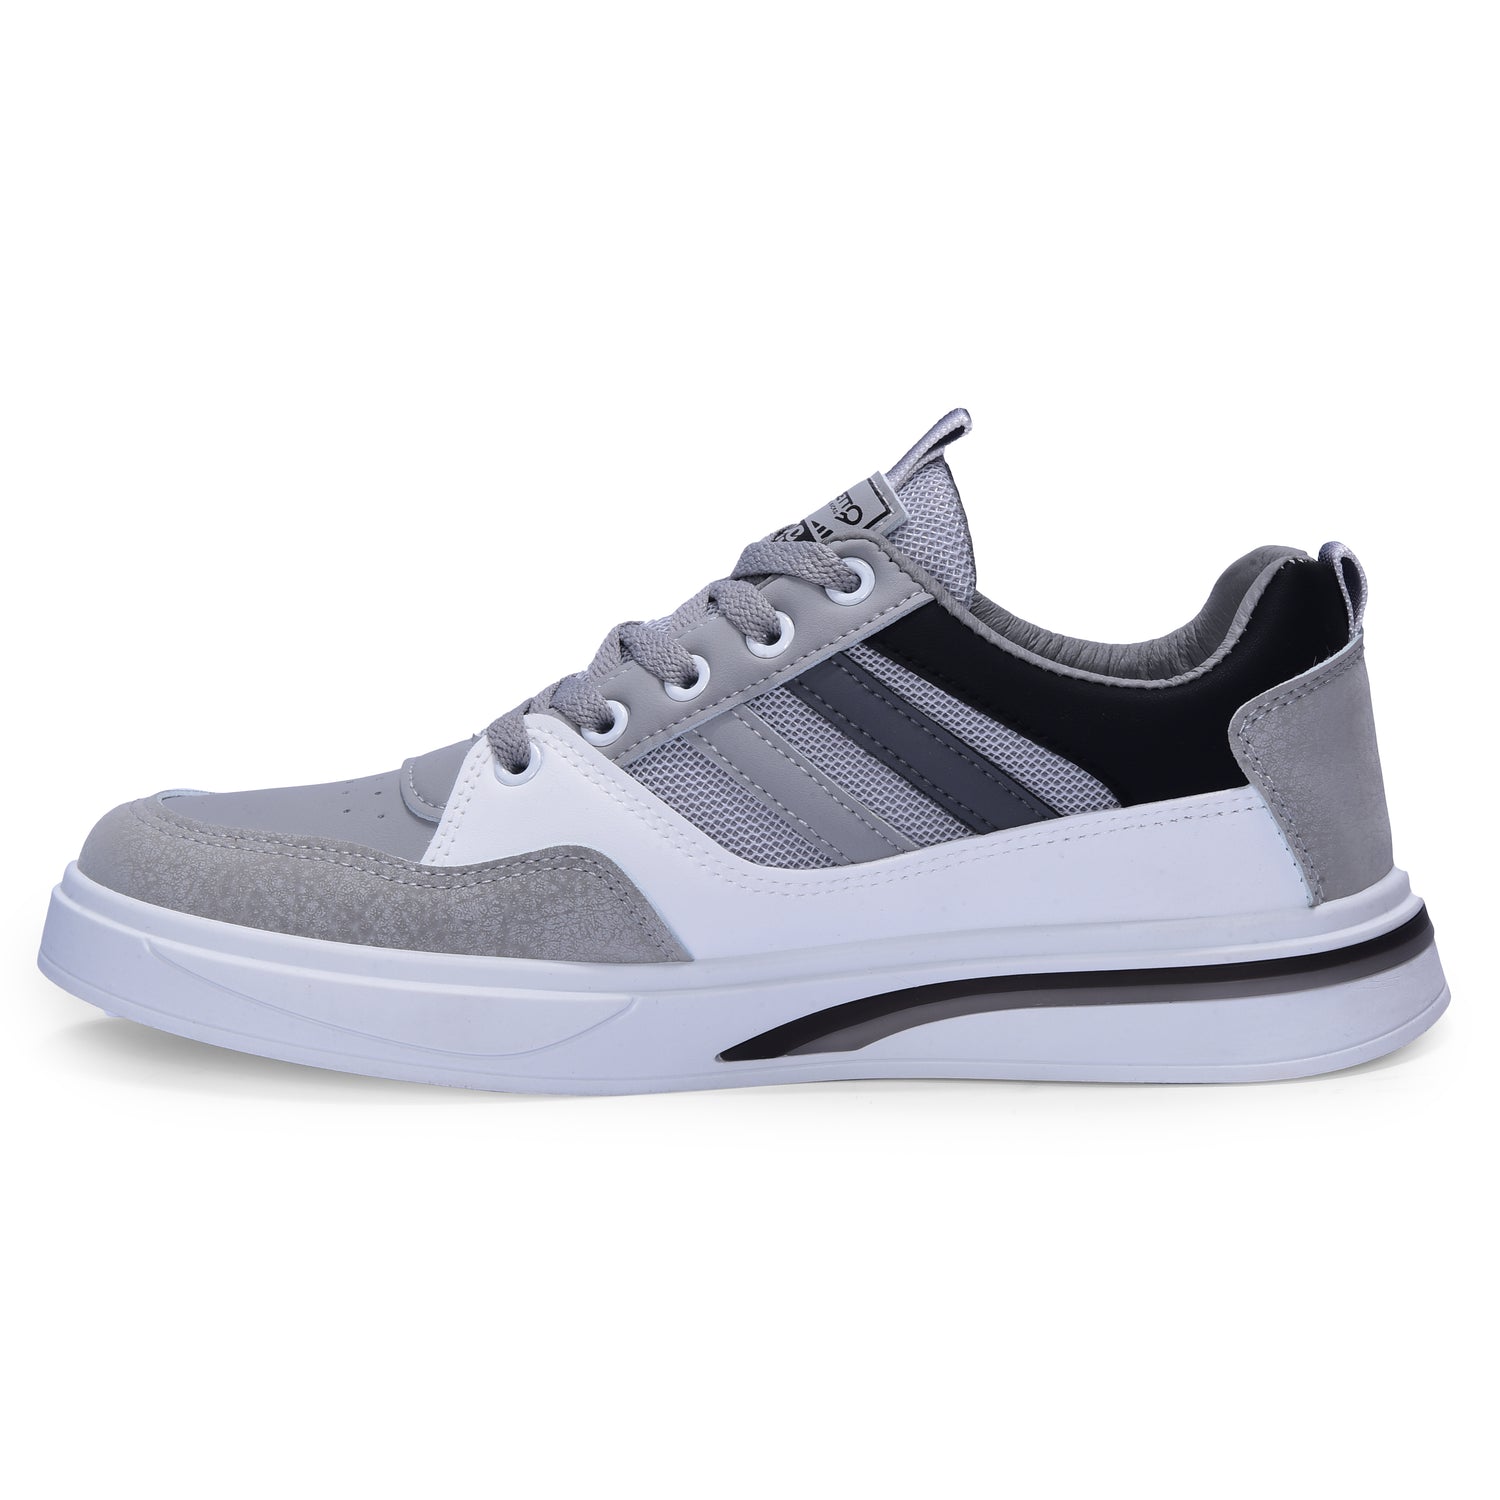 Calcetto CLT-2024 Grey Black Sneaker For Men